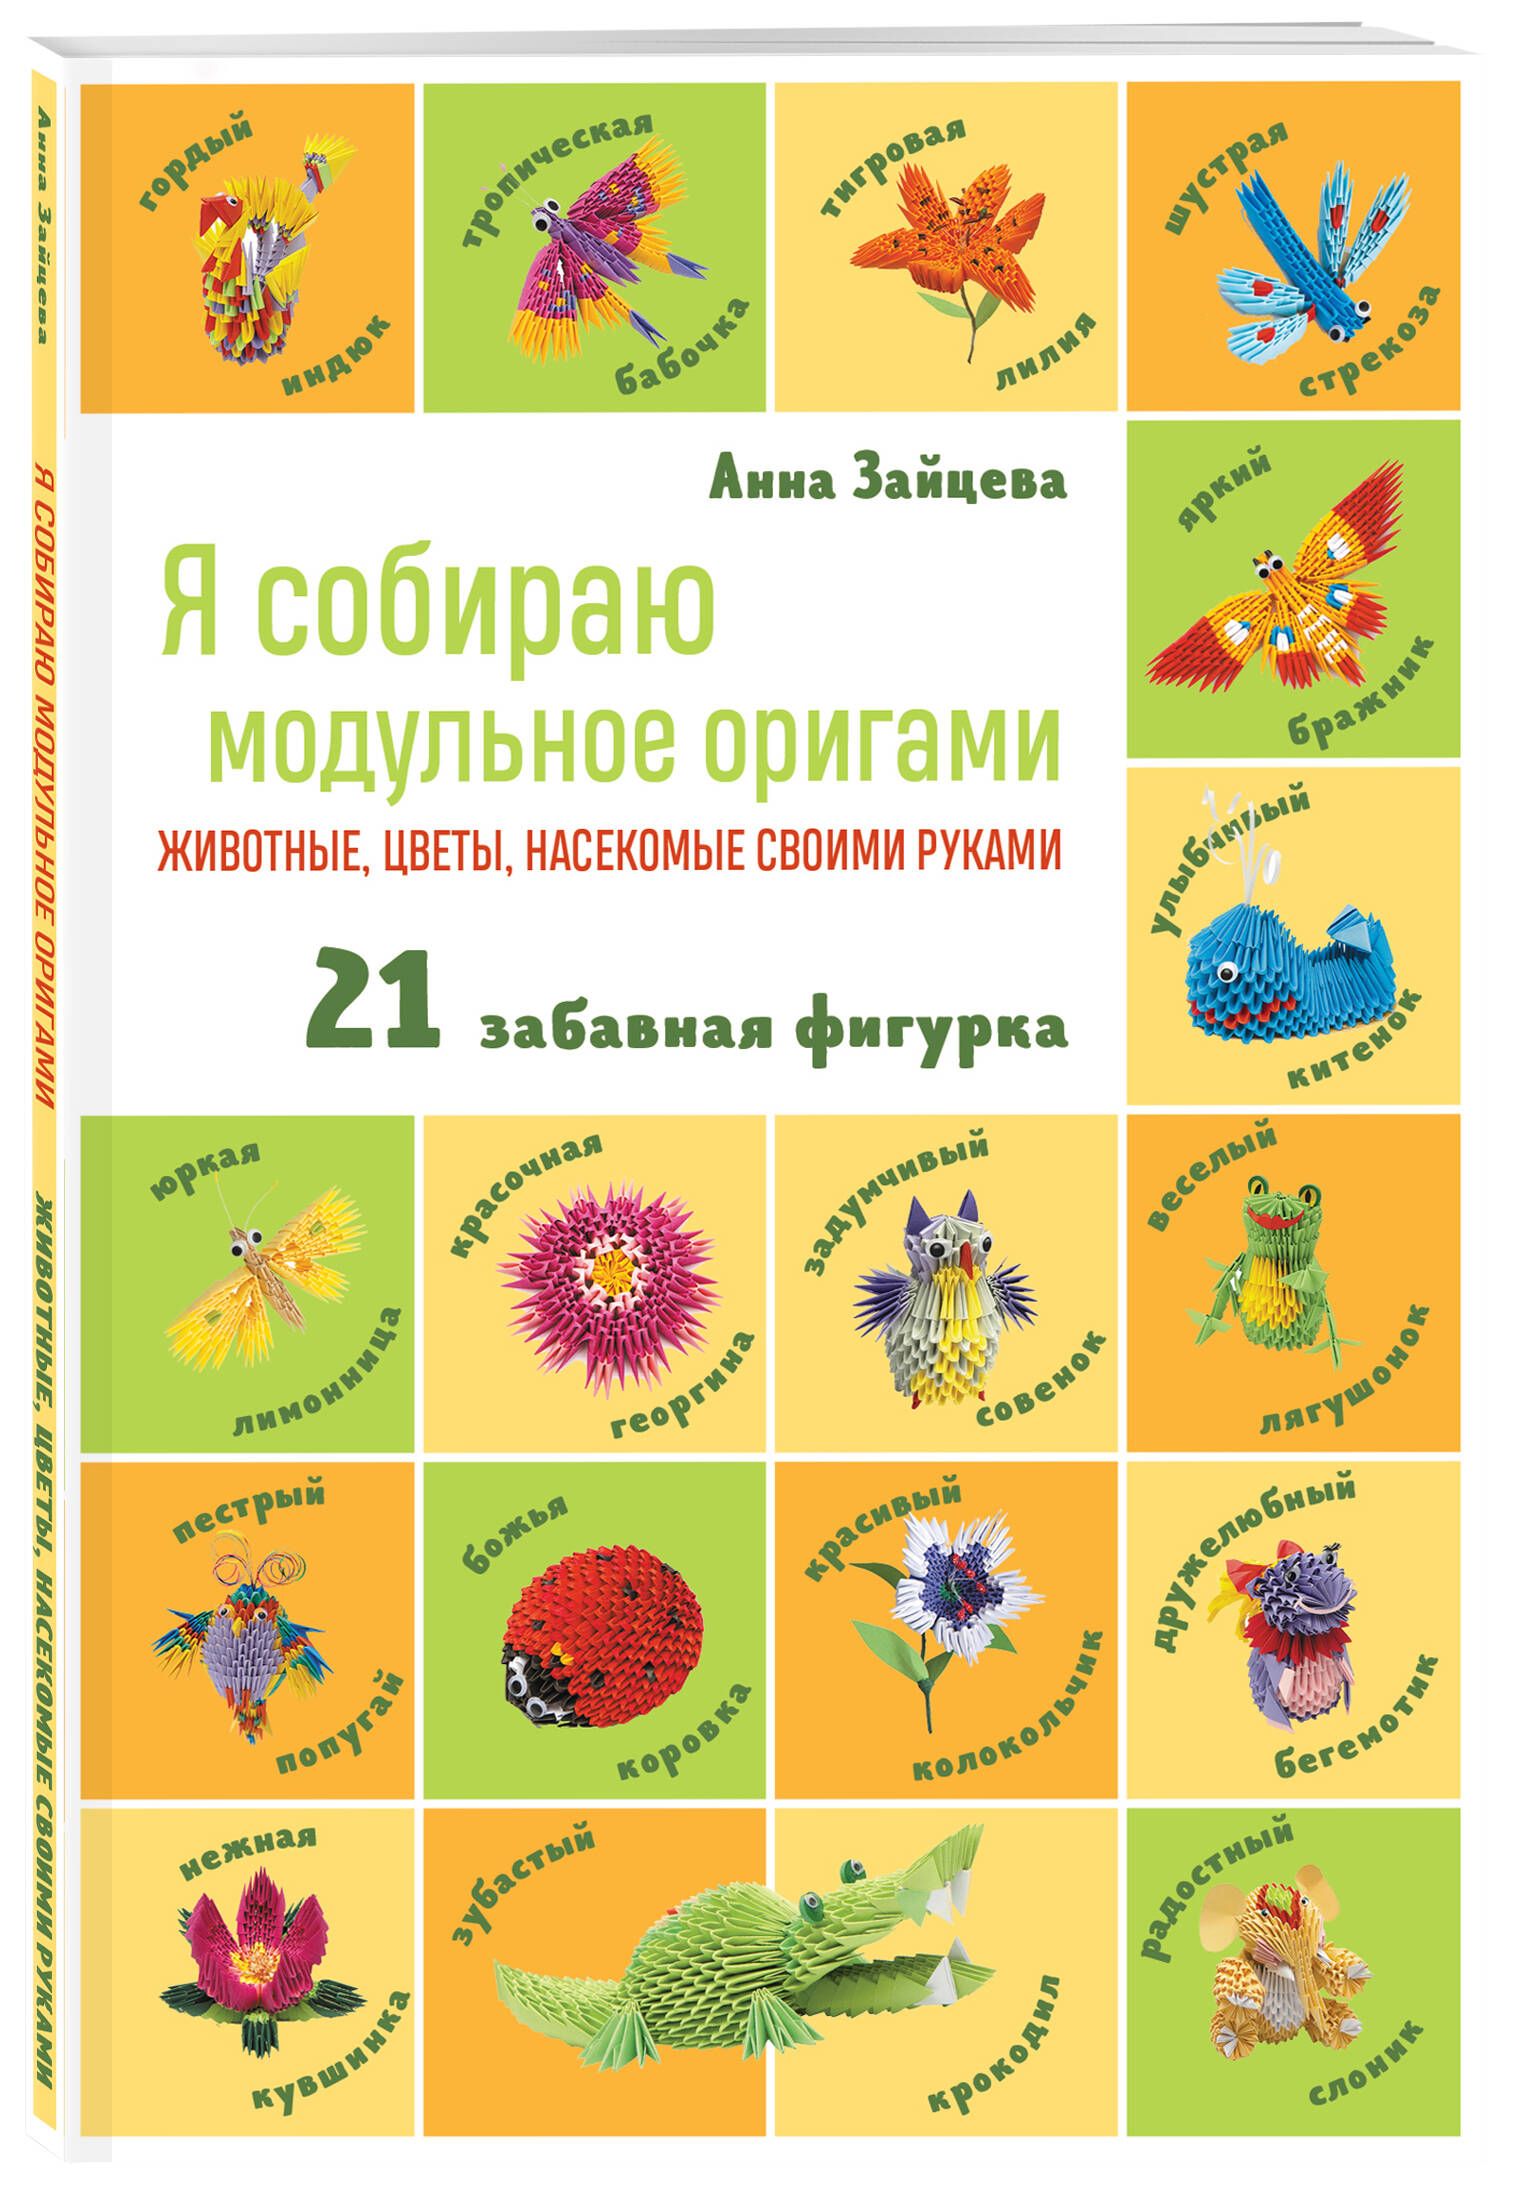 Russian Origami Magazine 2 PDF